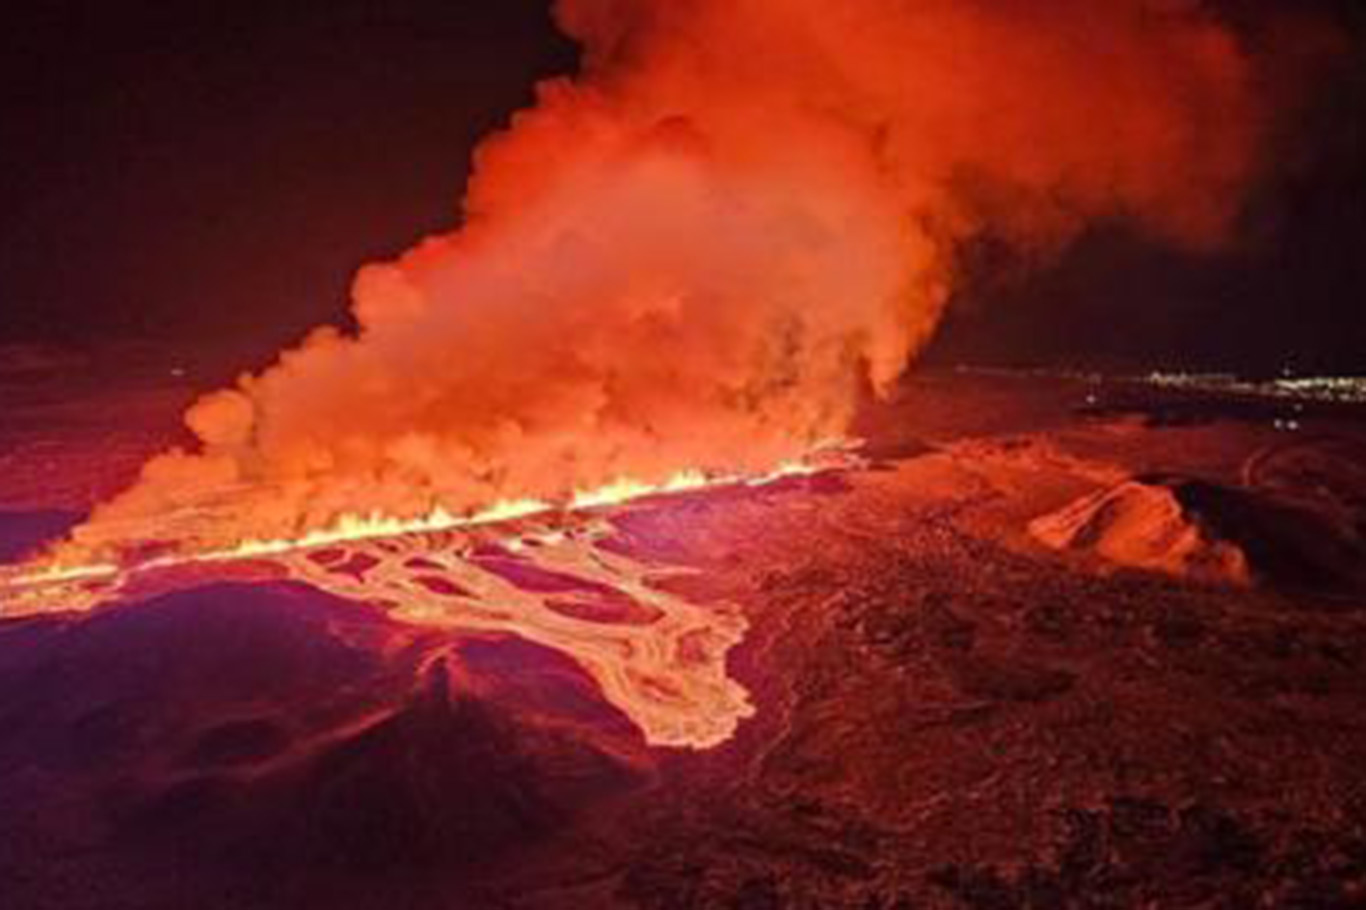 İzlanda'da yanardağ patlaması nedeniyle acil durum ilan edildi